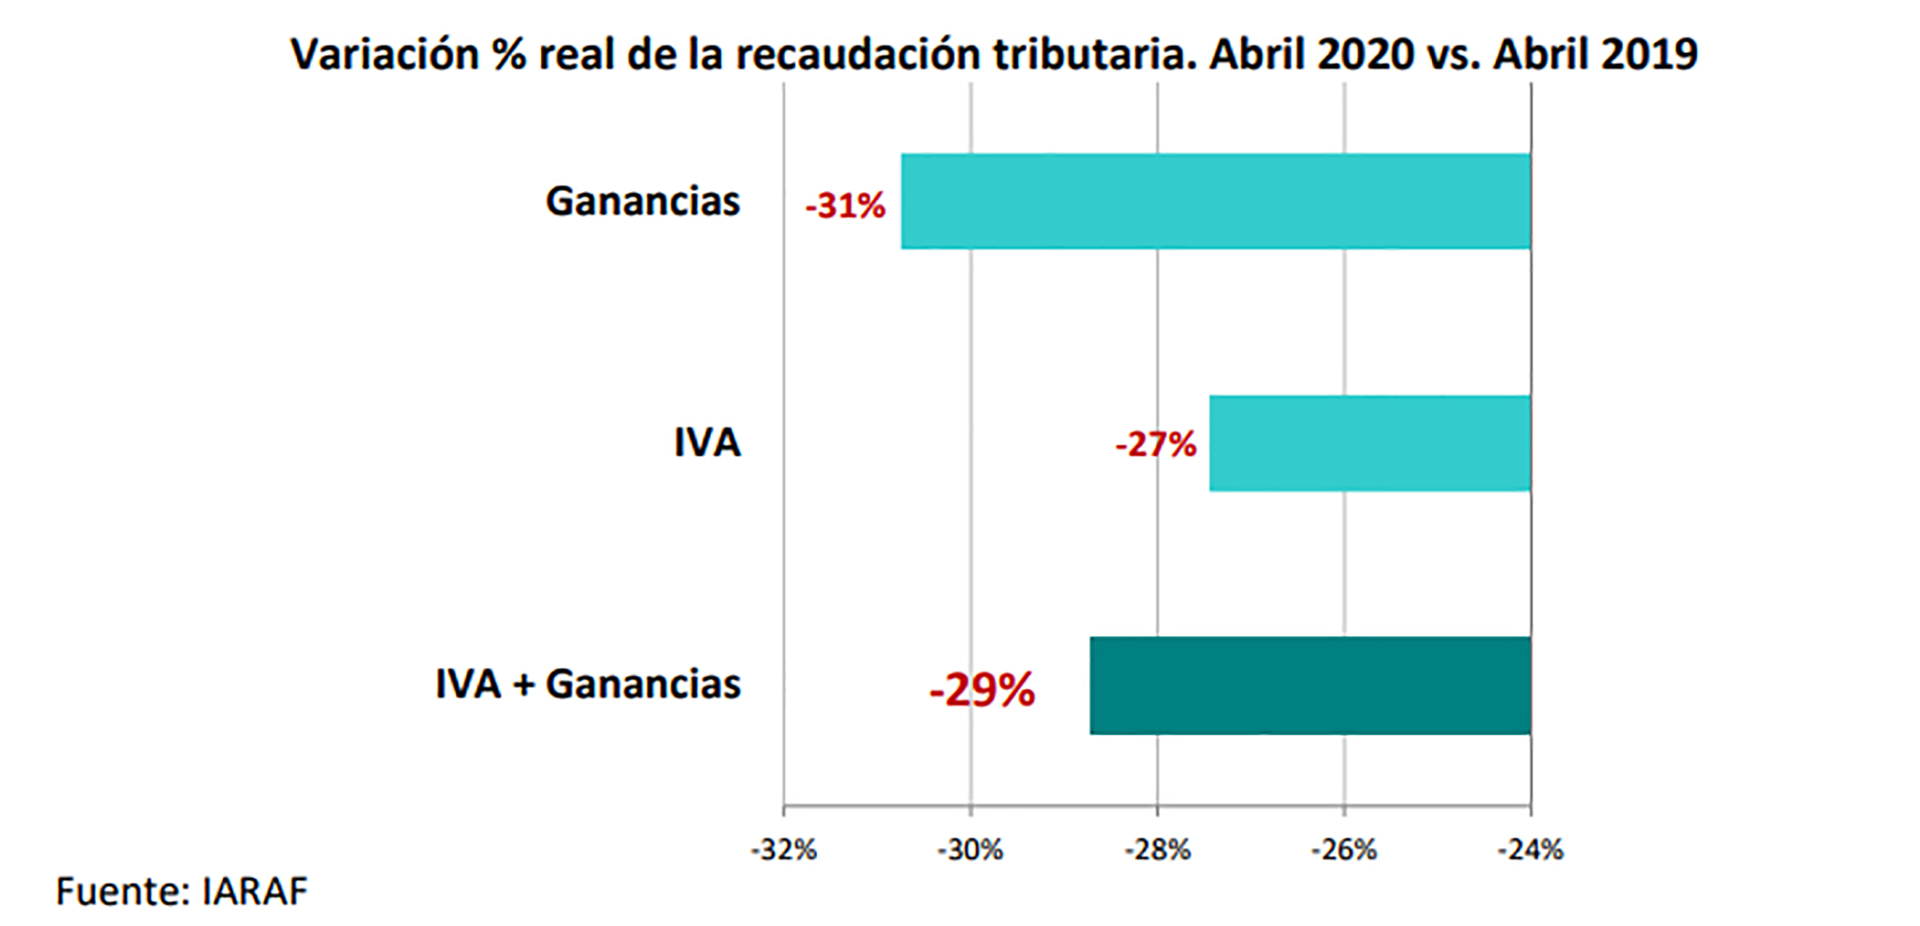 La recaudación de IVA cayó en abril un 27% en términos reales, mientras que la de Ganancias lo hizo en un 31% real interanual, según un informe de IARAF.